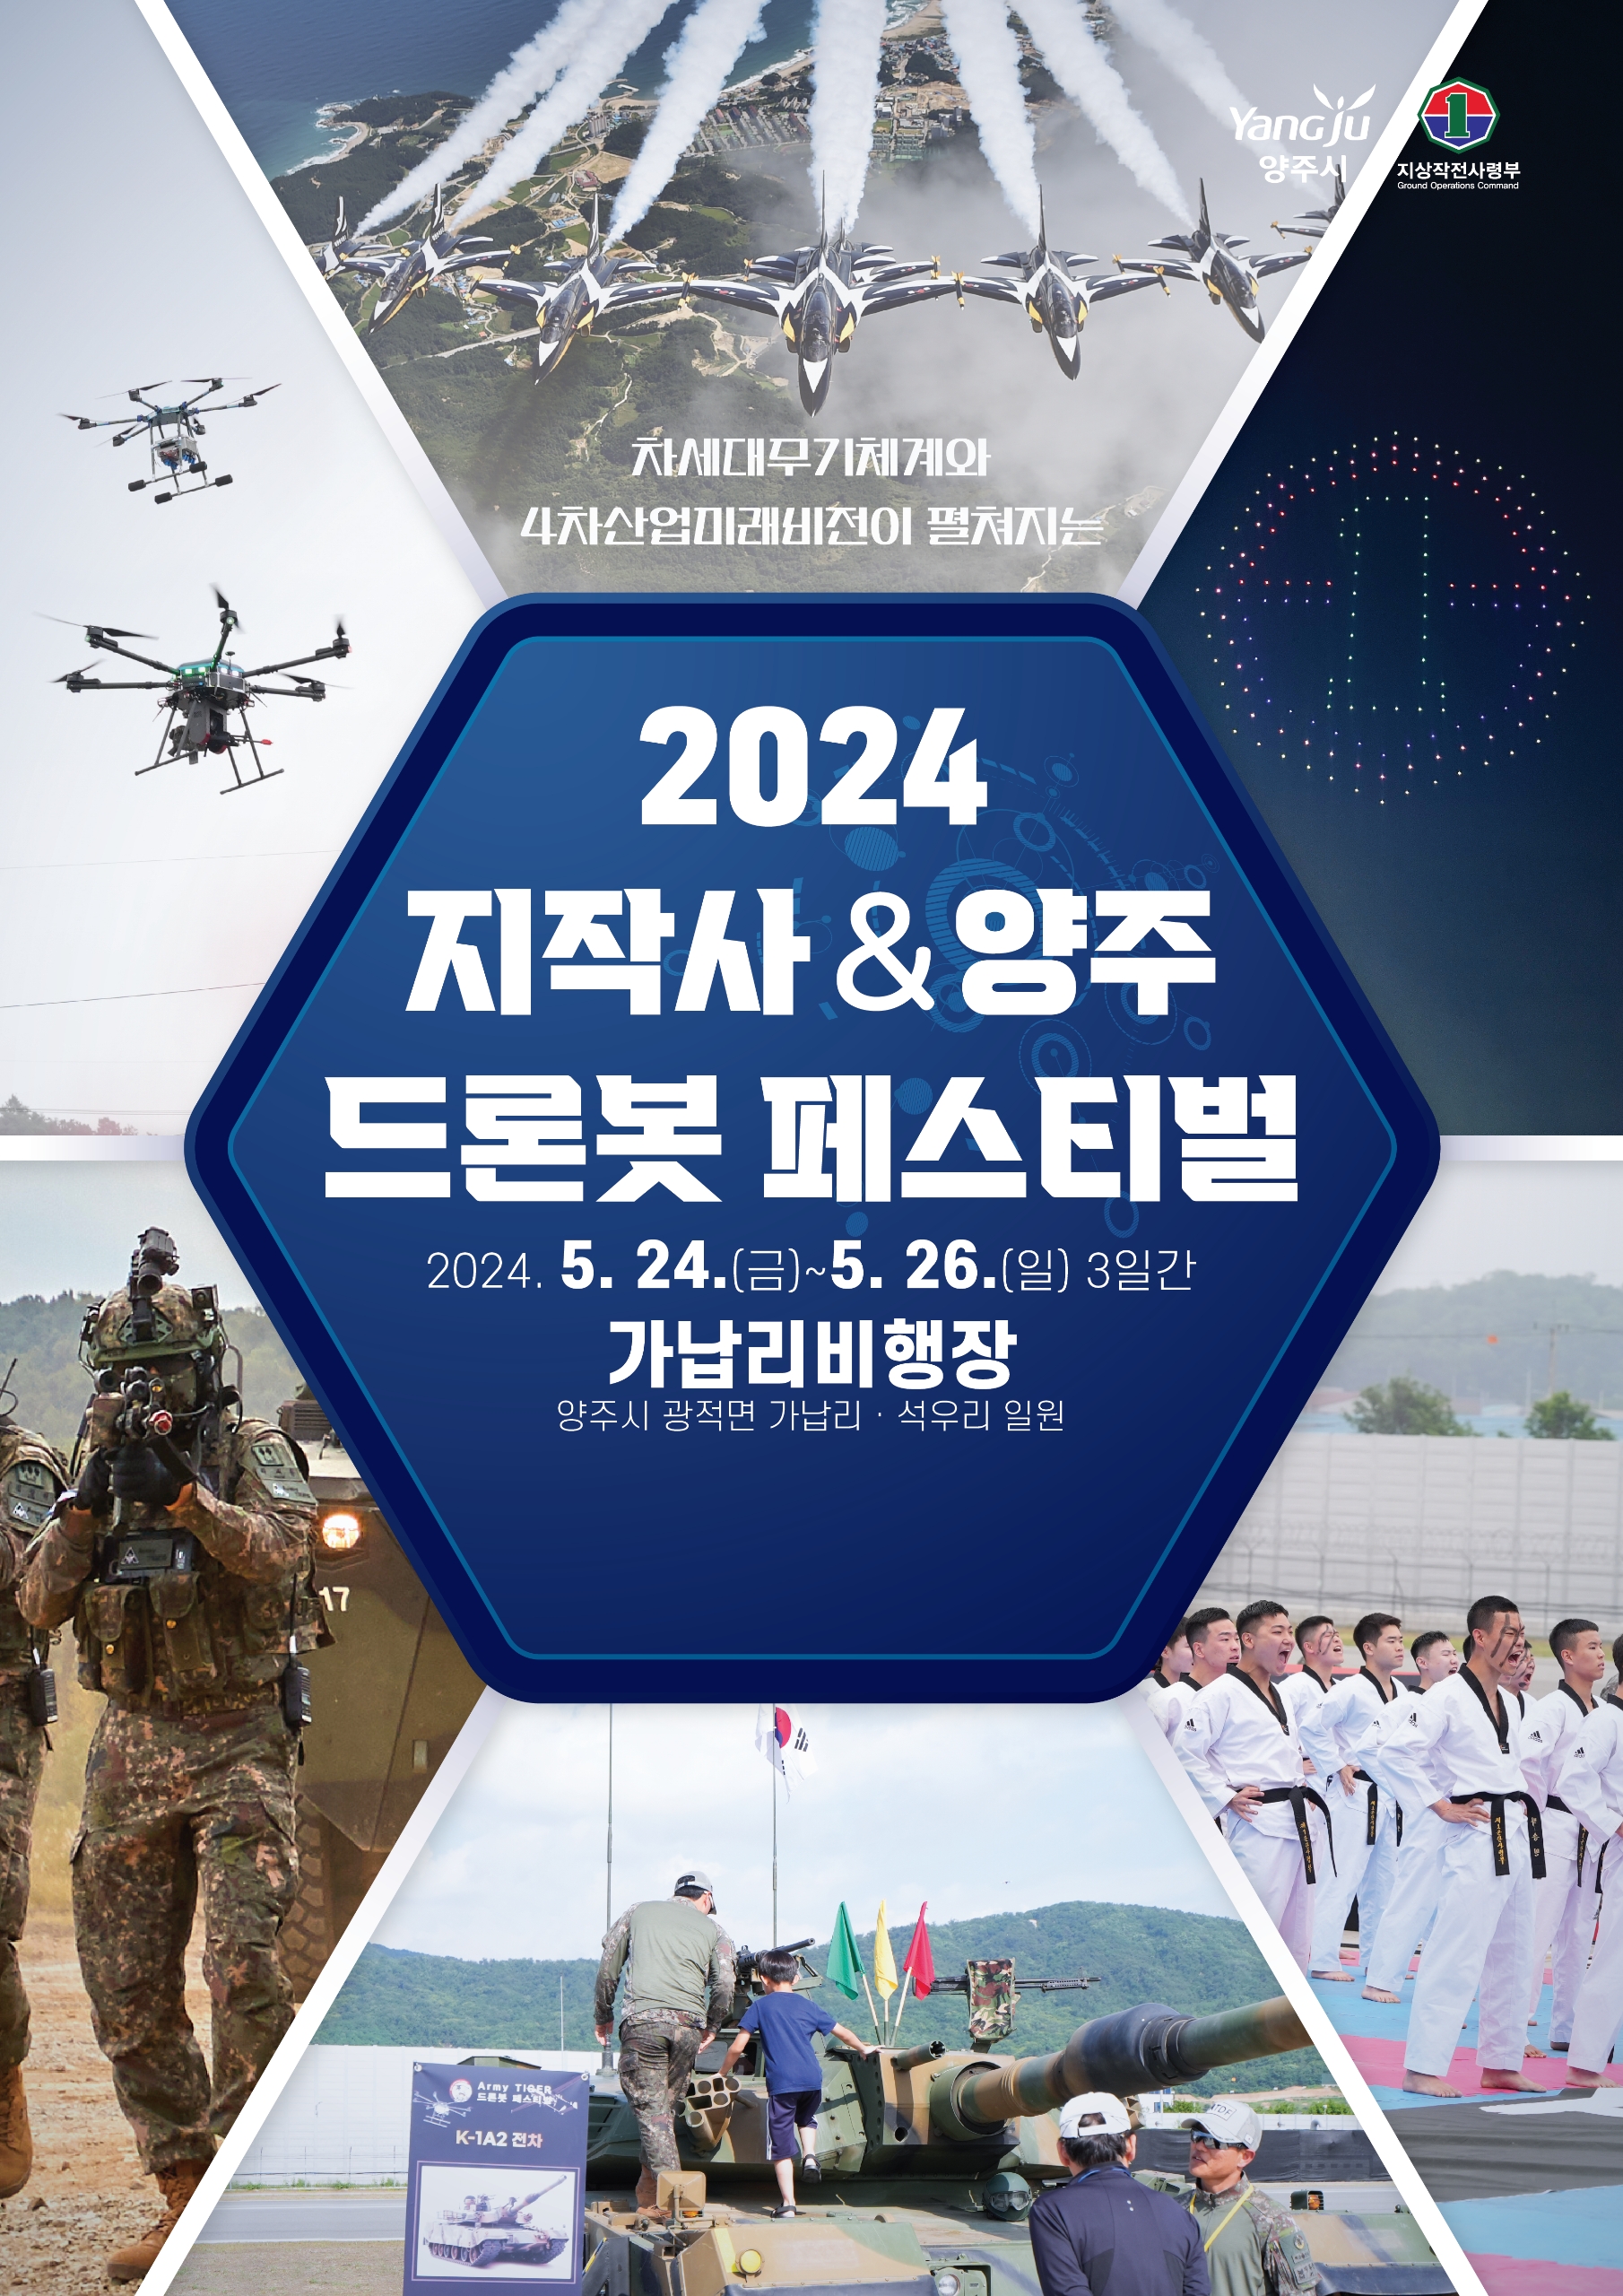 양주시ㆍ지작사 공동주최 ‘2024 드론봇 페스티벌’ 개최 예정 이미지